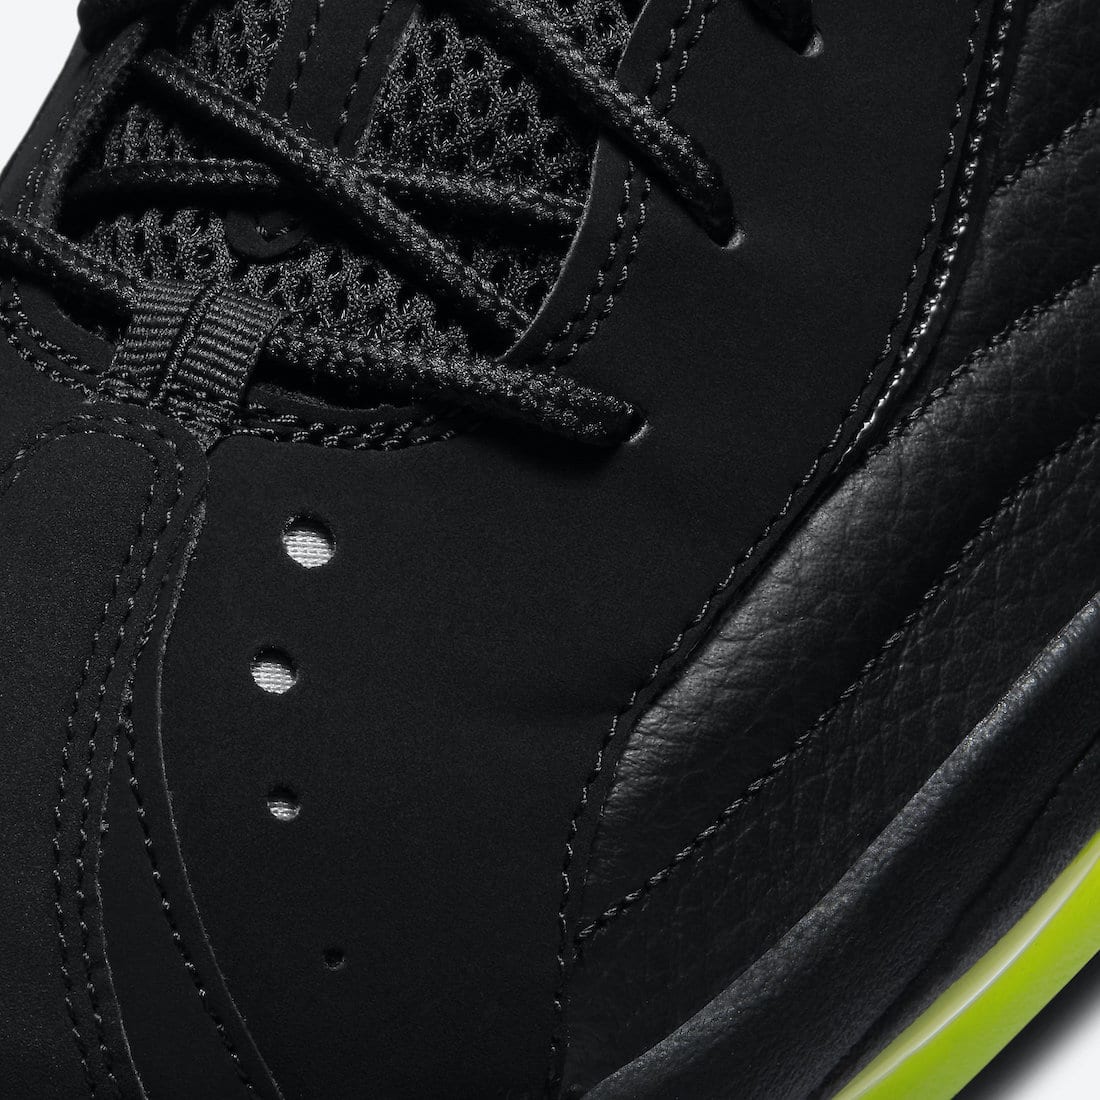 Nike-Air-Total-Max-Uptempo-Black-Volt-DA2339-001-Release-Date-6